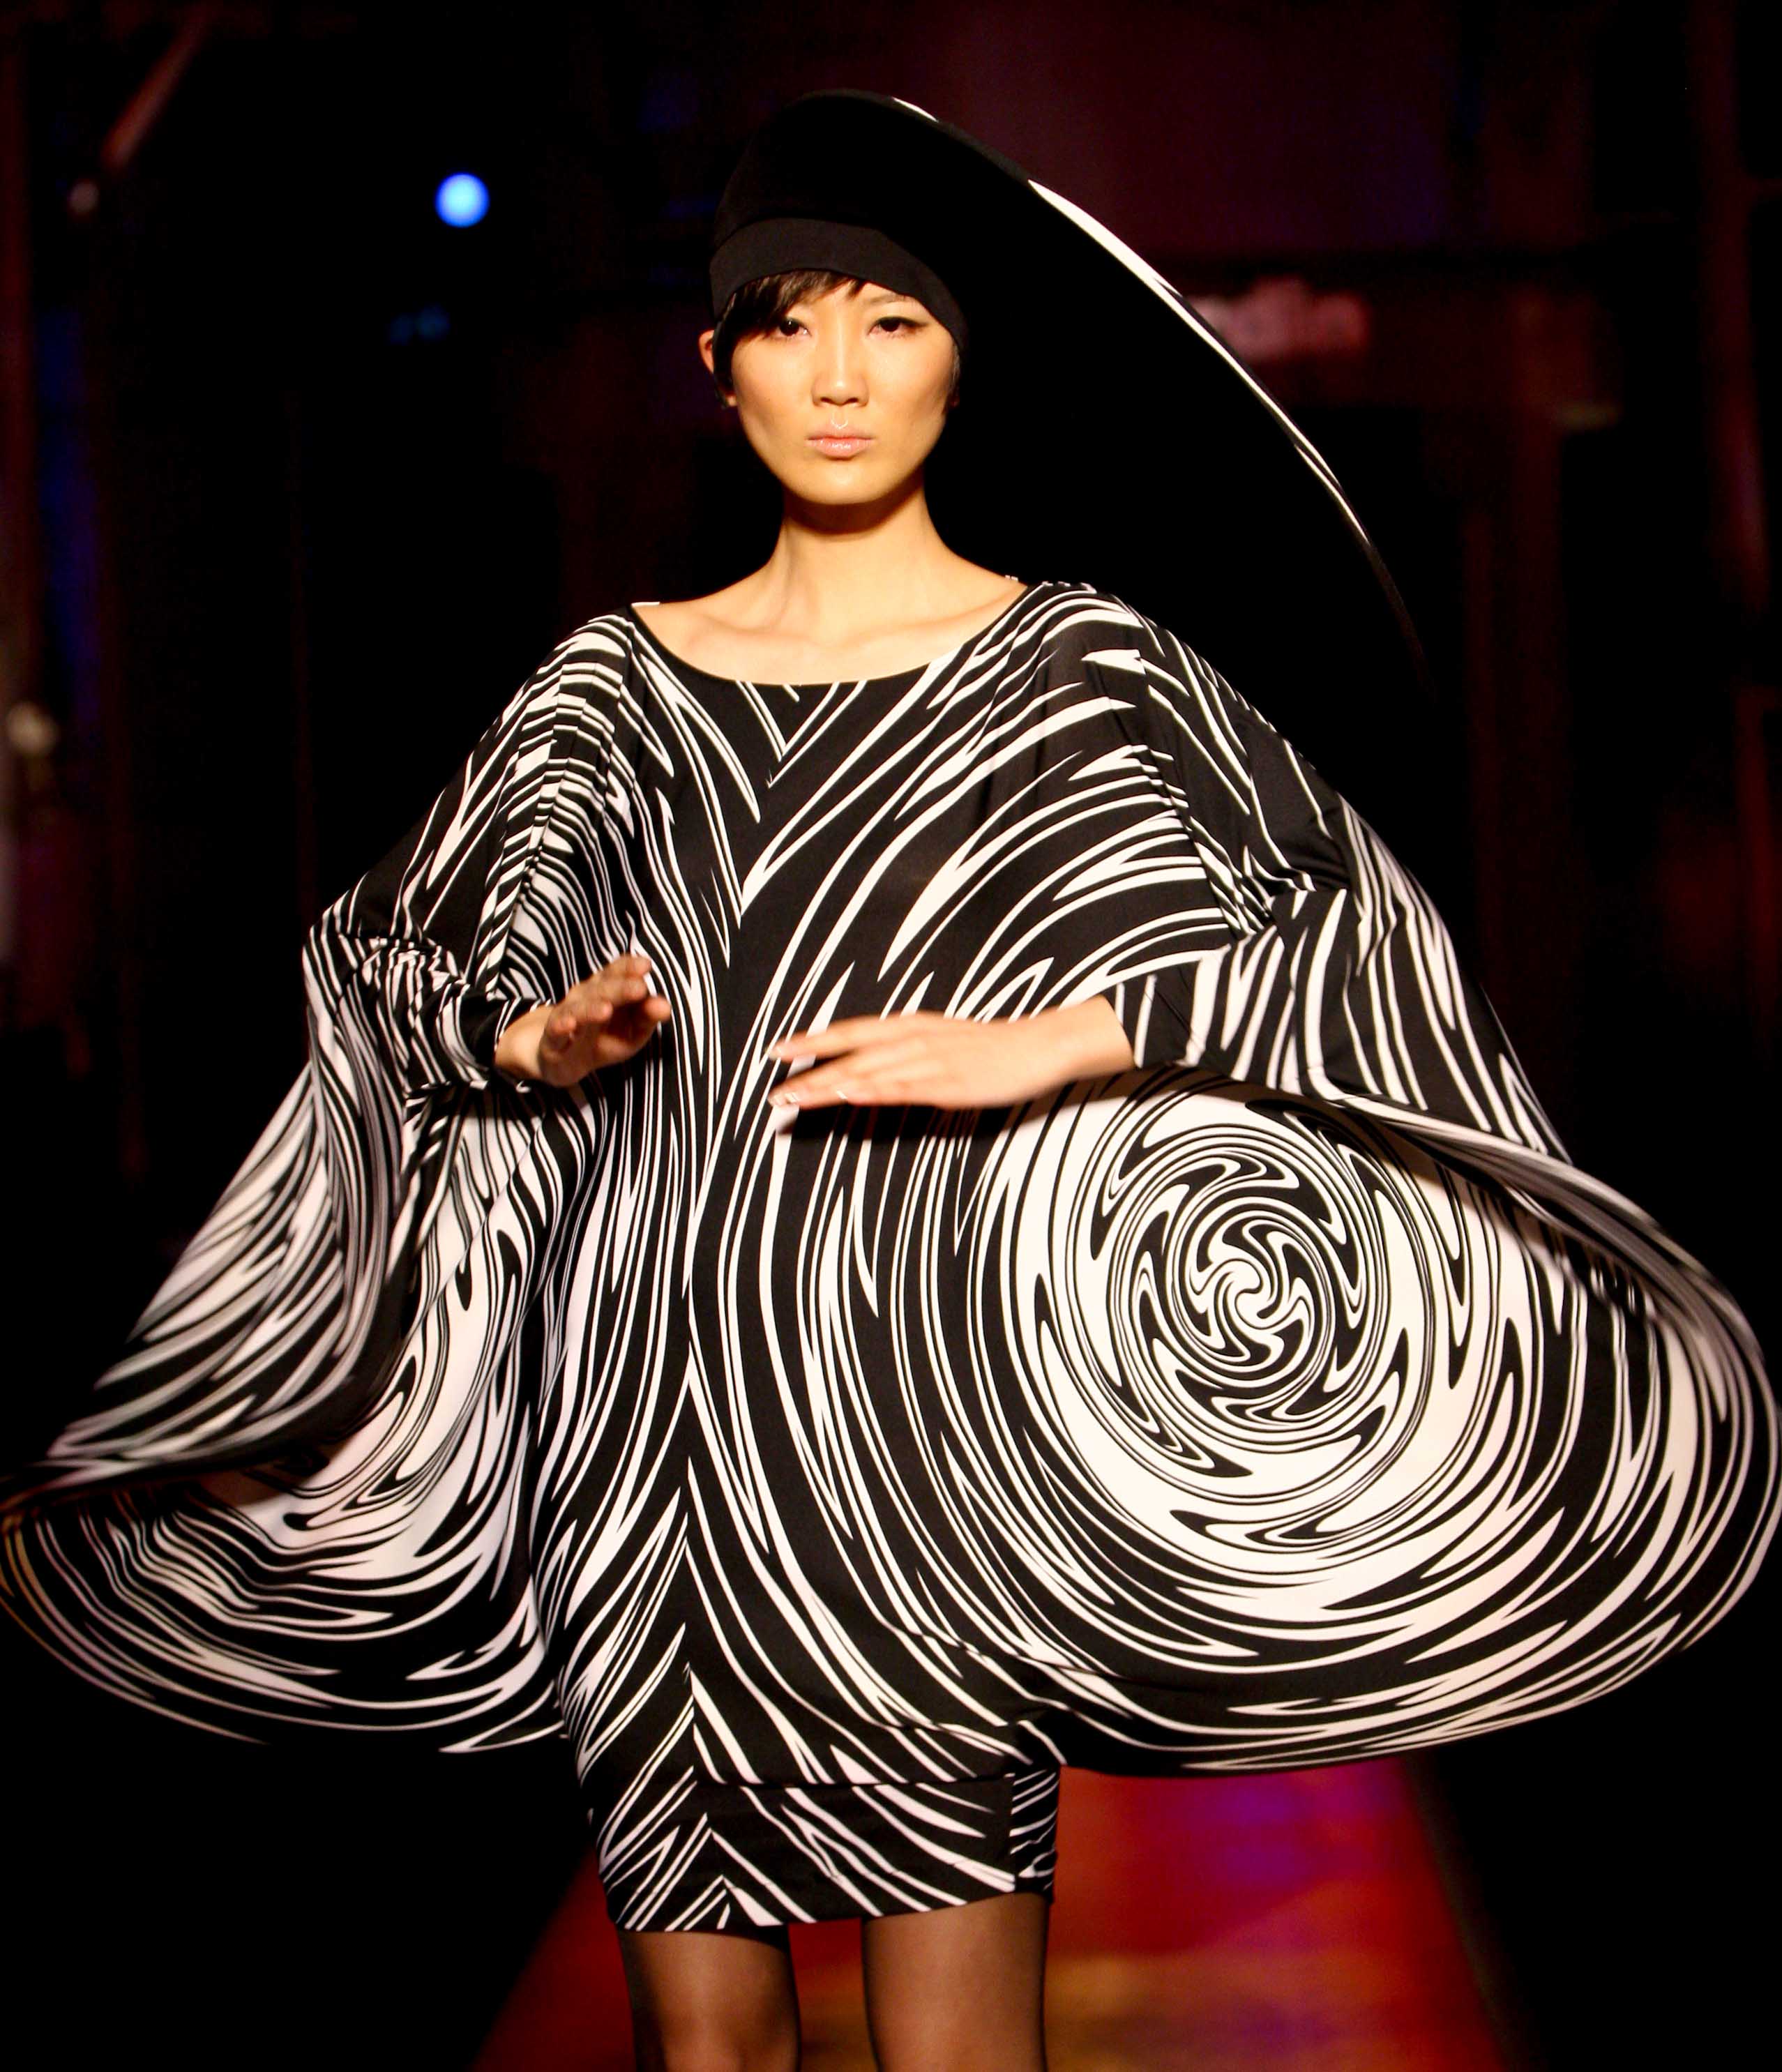 新華社照片，北京，2009年4月11日4月10日，模特在北京舉行的“2009/2010秋冬皮爾·卡丹新品發布會”上展示法國時裝大師的時裝作品。新華社記者陳建力攝